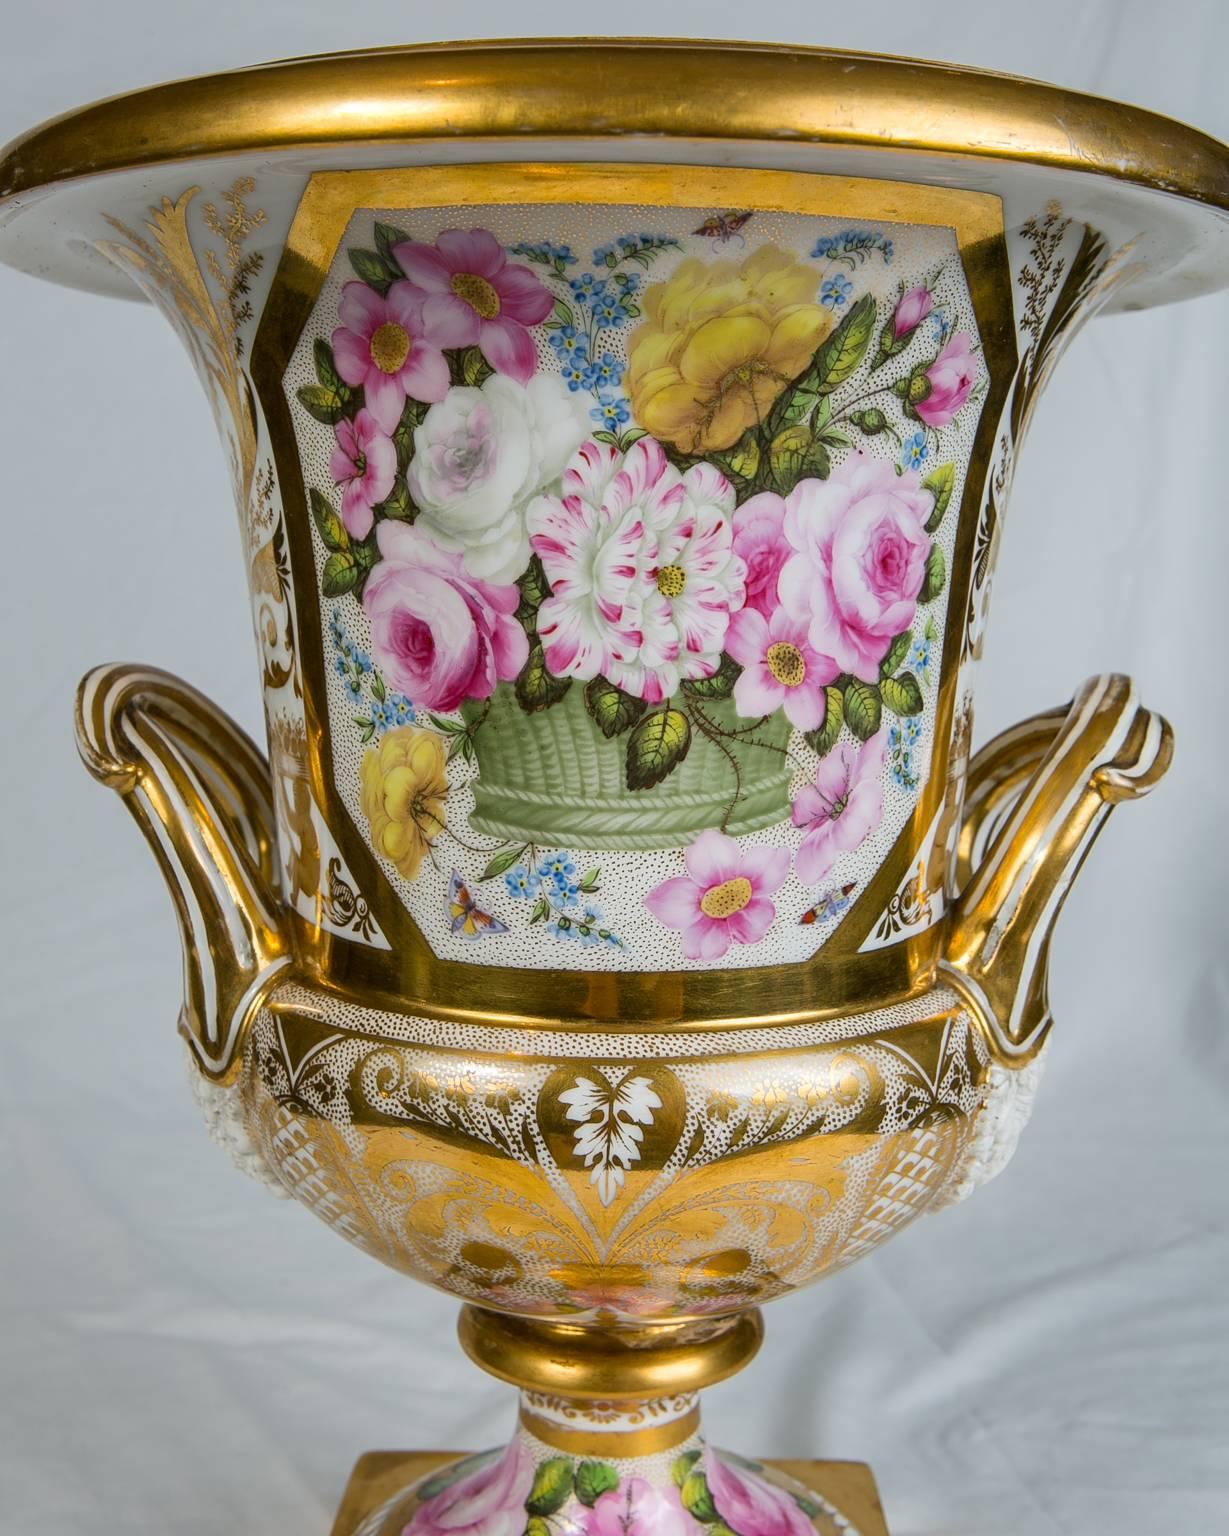 Regency Antique Spode Porcelain Urn Made in England circa 1810 For Sale